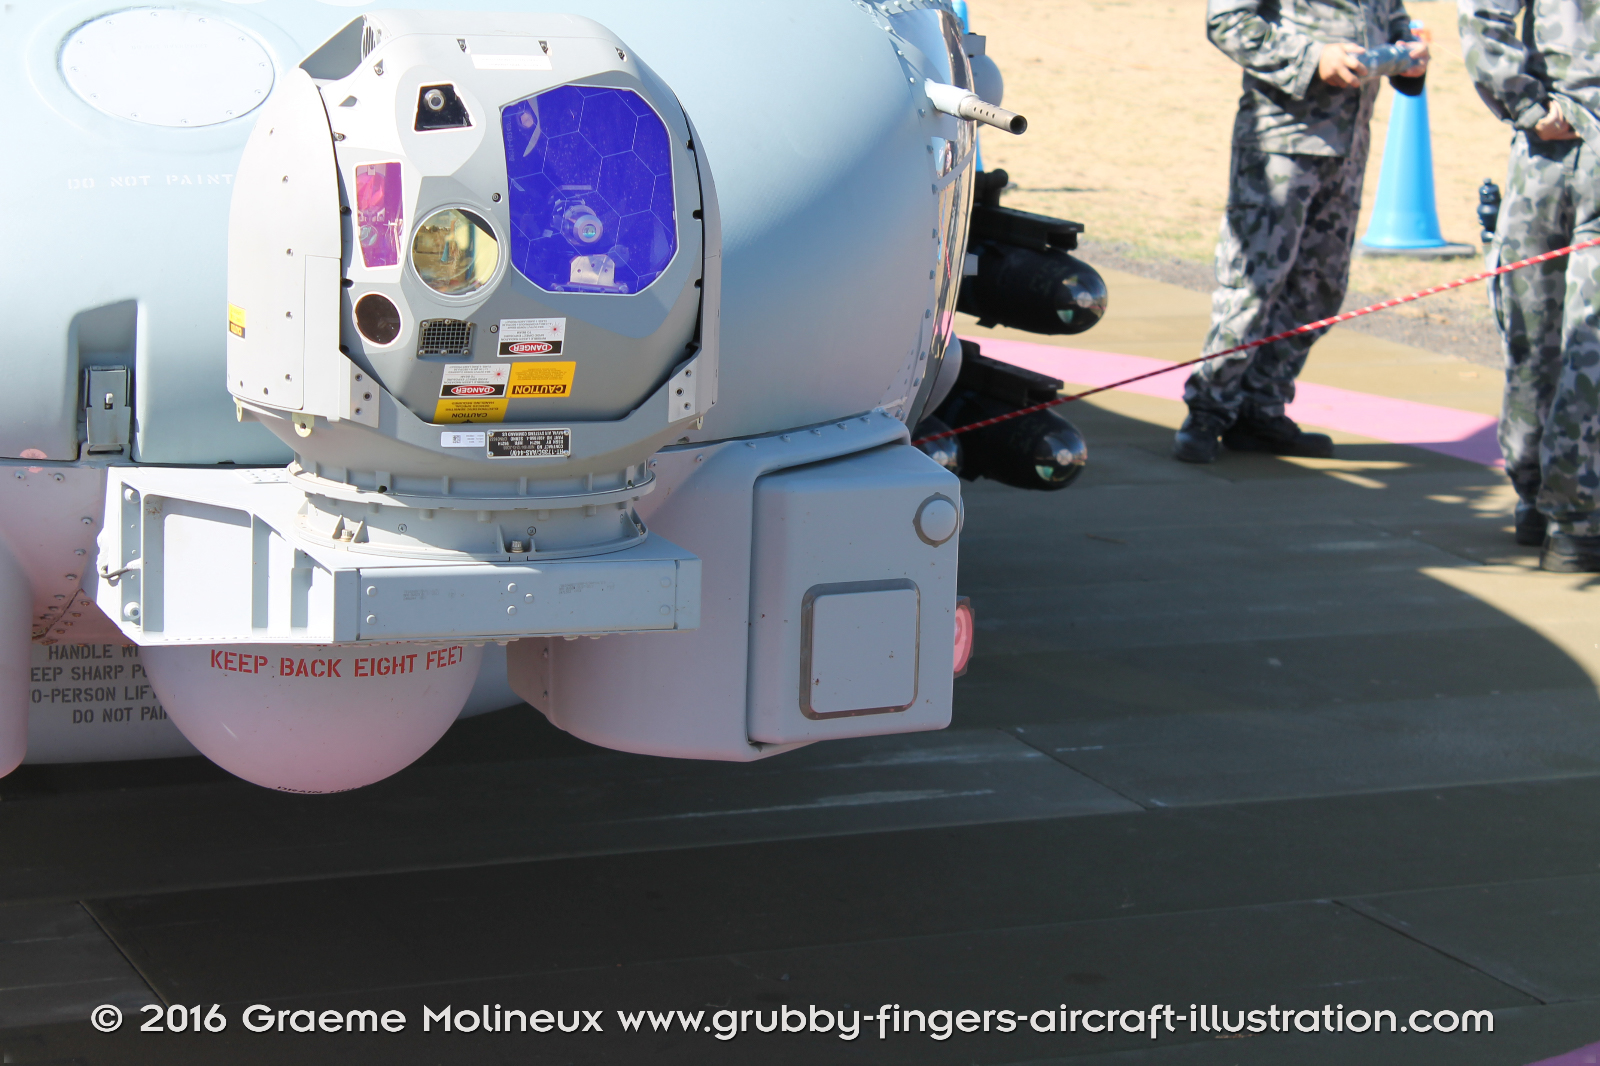 SIKORSKY_MH-60R_Seahawk_N48-005_Avalon_2015_16_GrubbyFingers